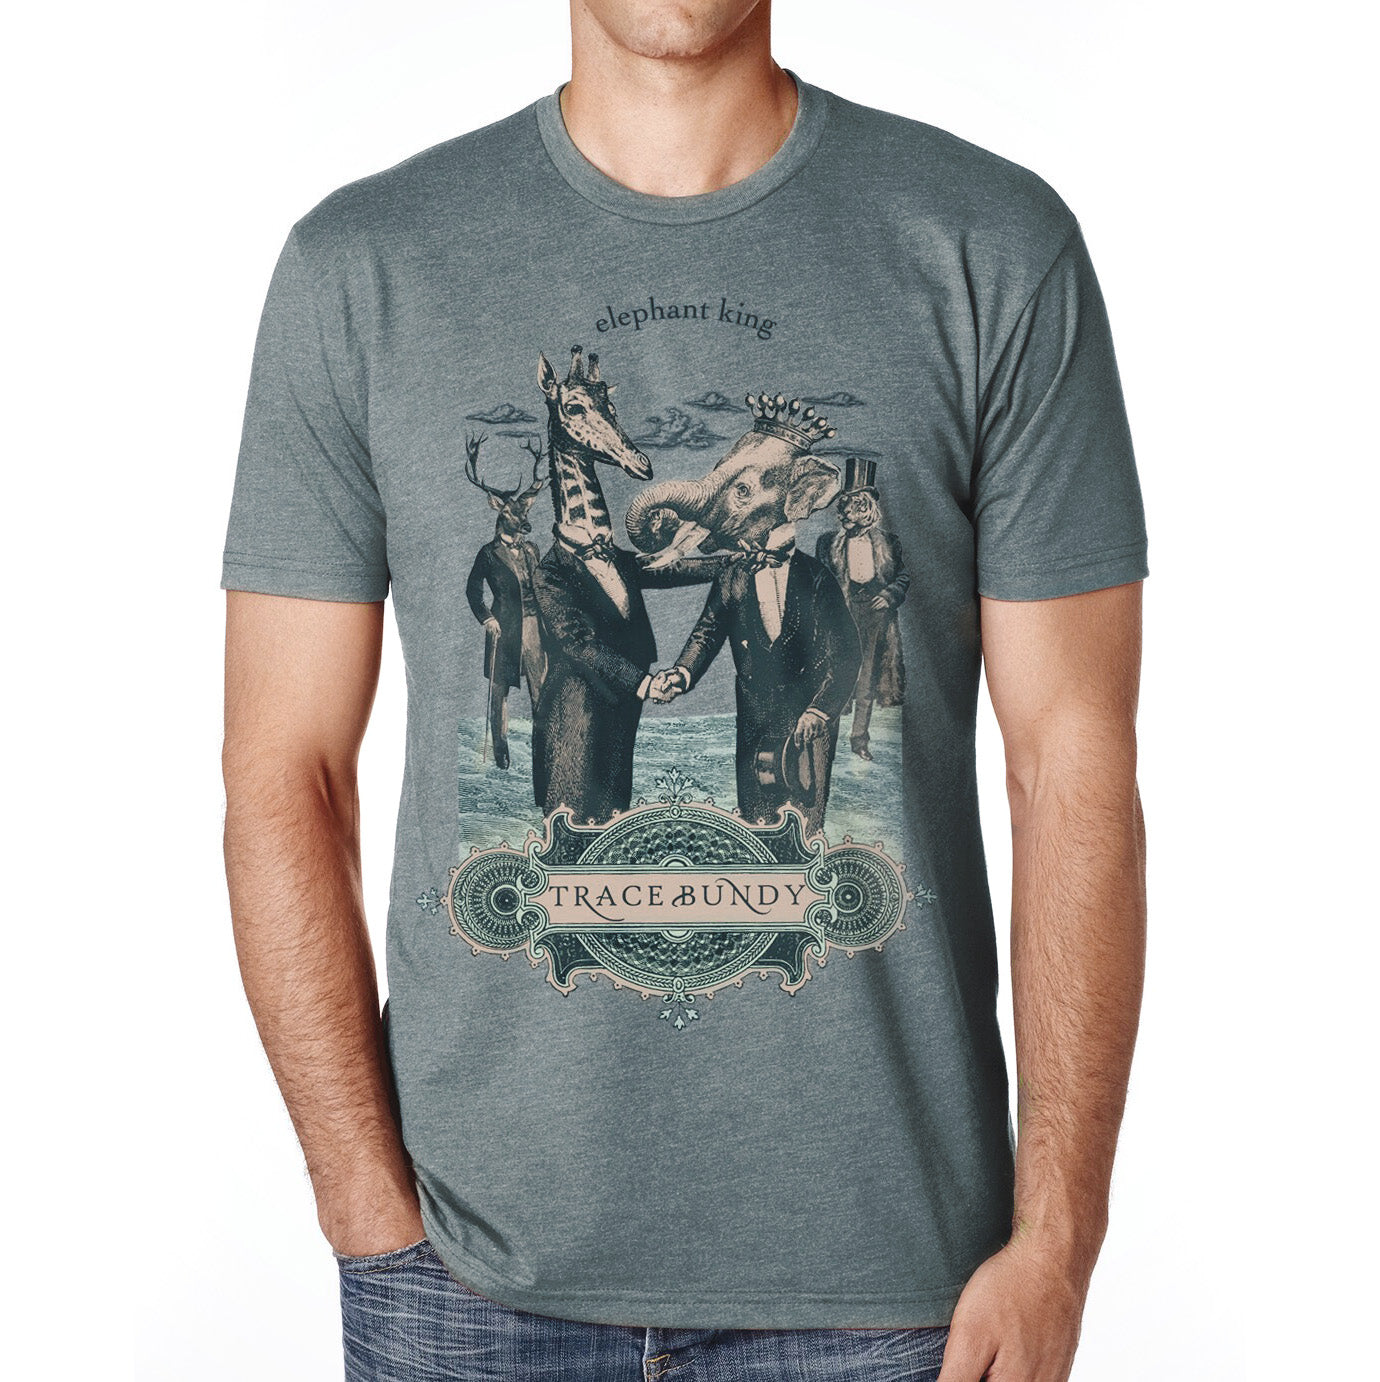 T-shirt: ELEPHANT KING - Unisex Shirt